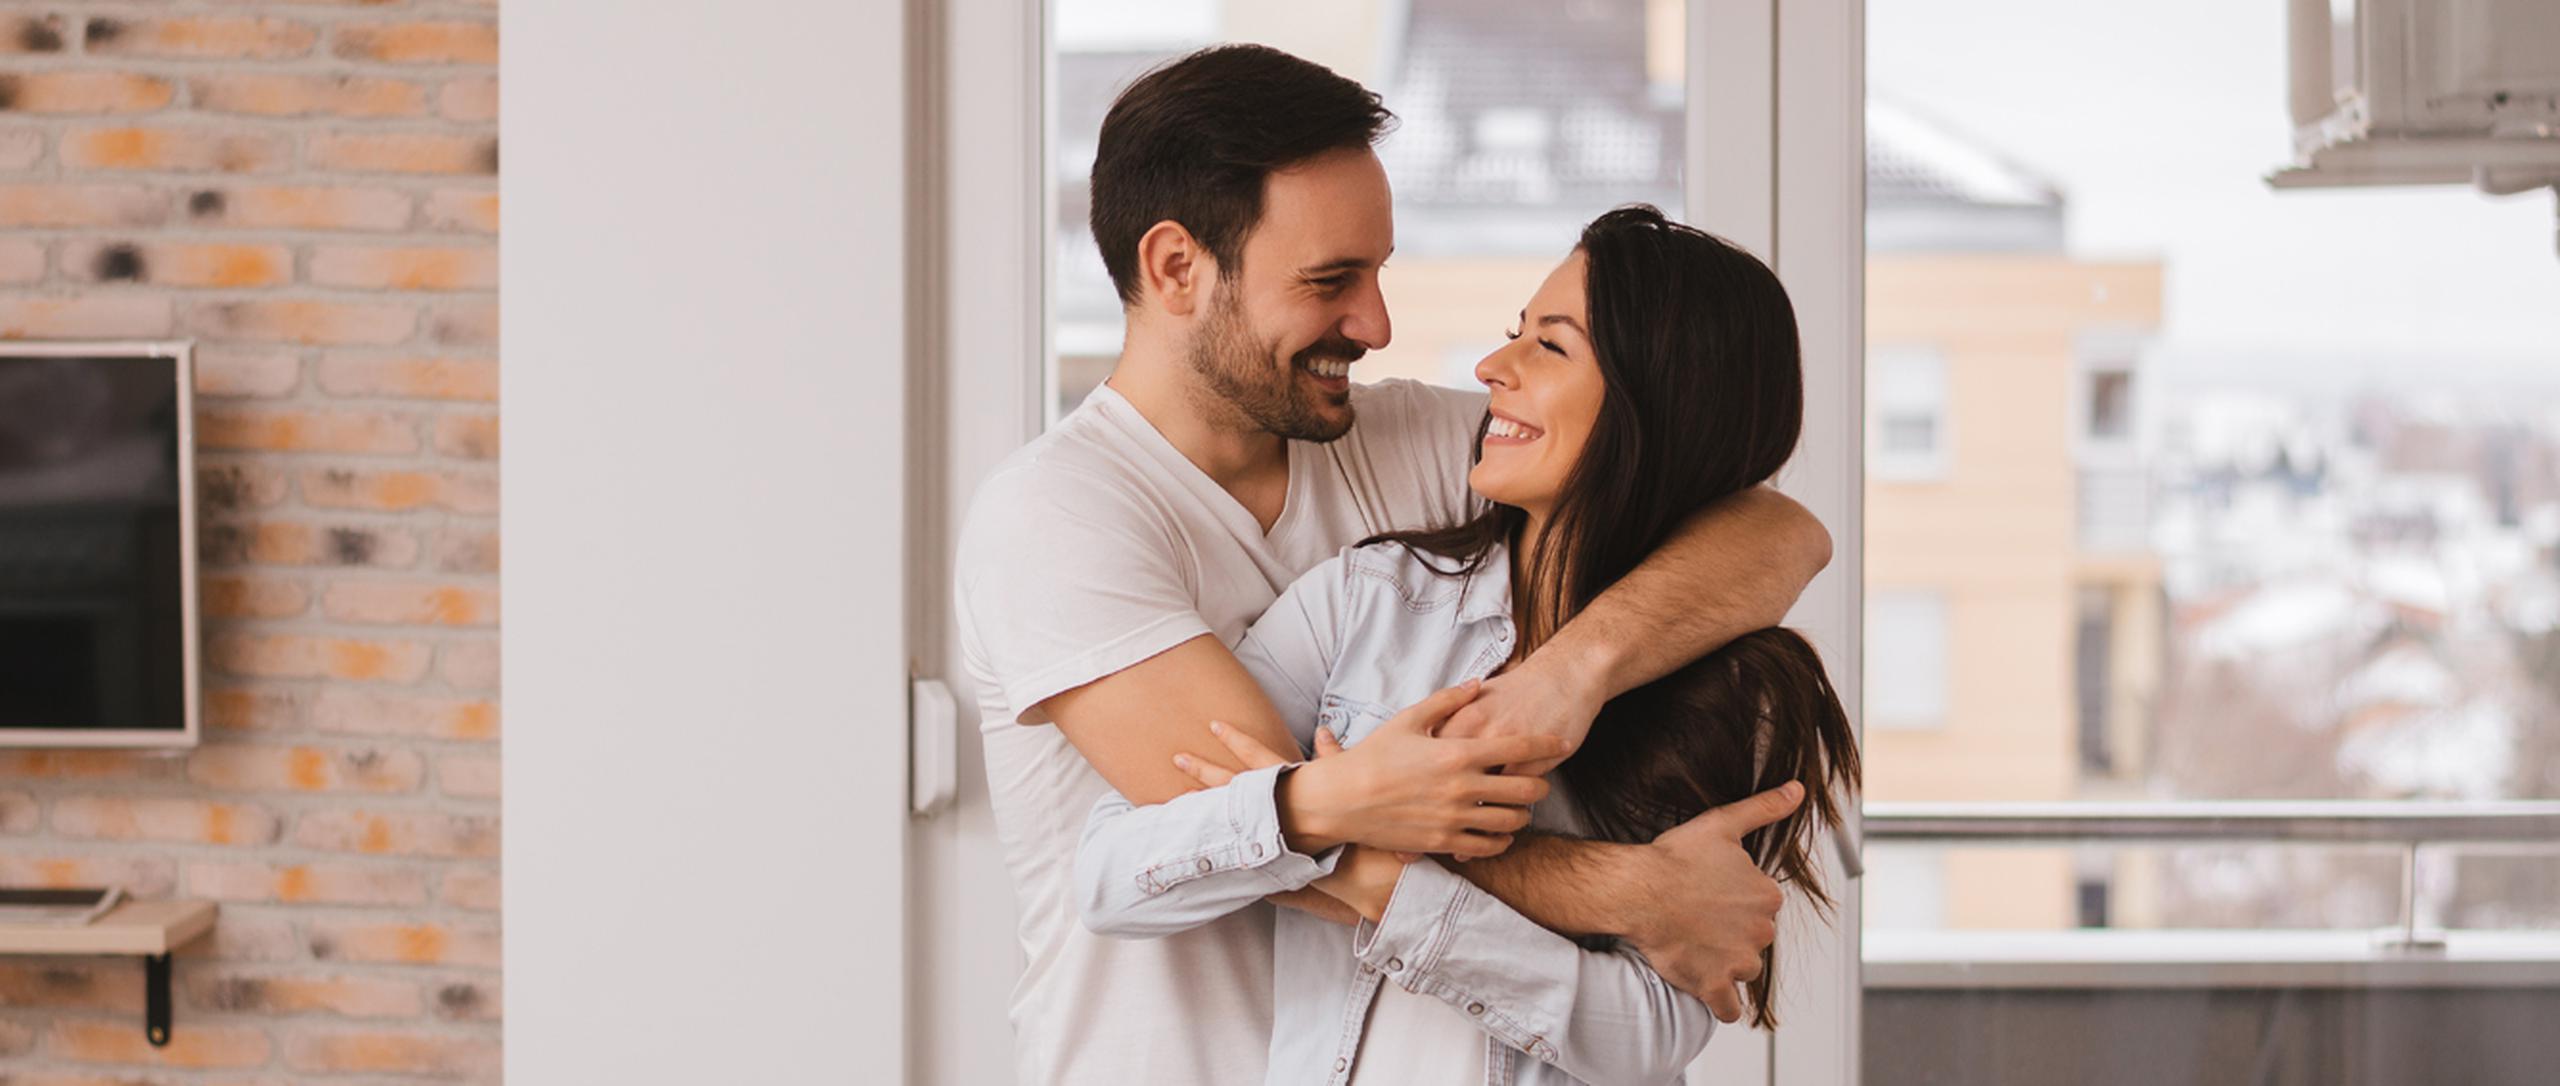 Las manifestaciones de afecto entre las parejas pueden marcar una gran diferencia para alcanzar el bienestar de quienes integran la relación. (Shutterstock).